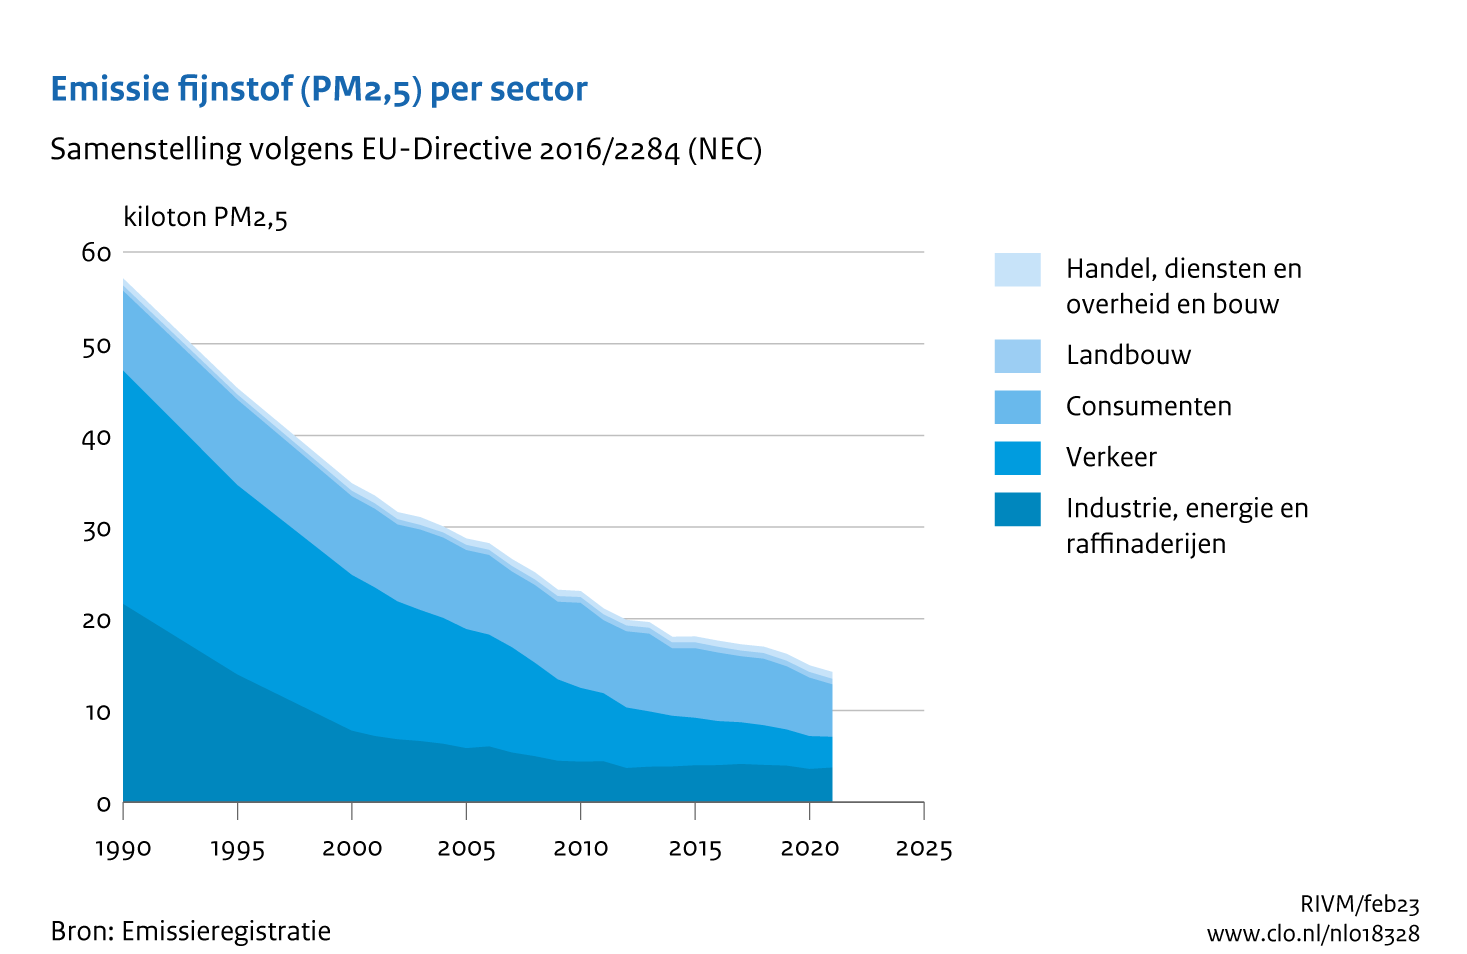 Figuur PM2,5-emissie per sector. In de rest van de tekst wordt deze figuur uitgebreider uitgelegd.